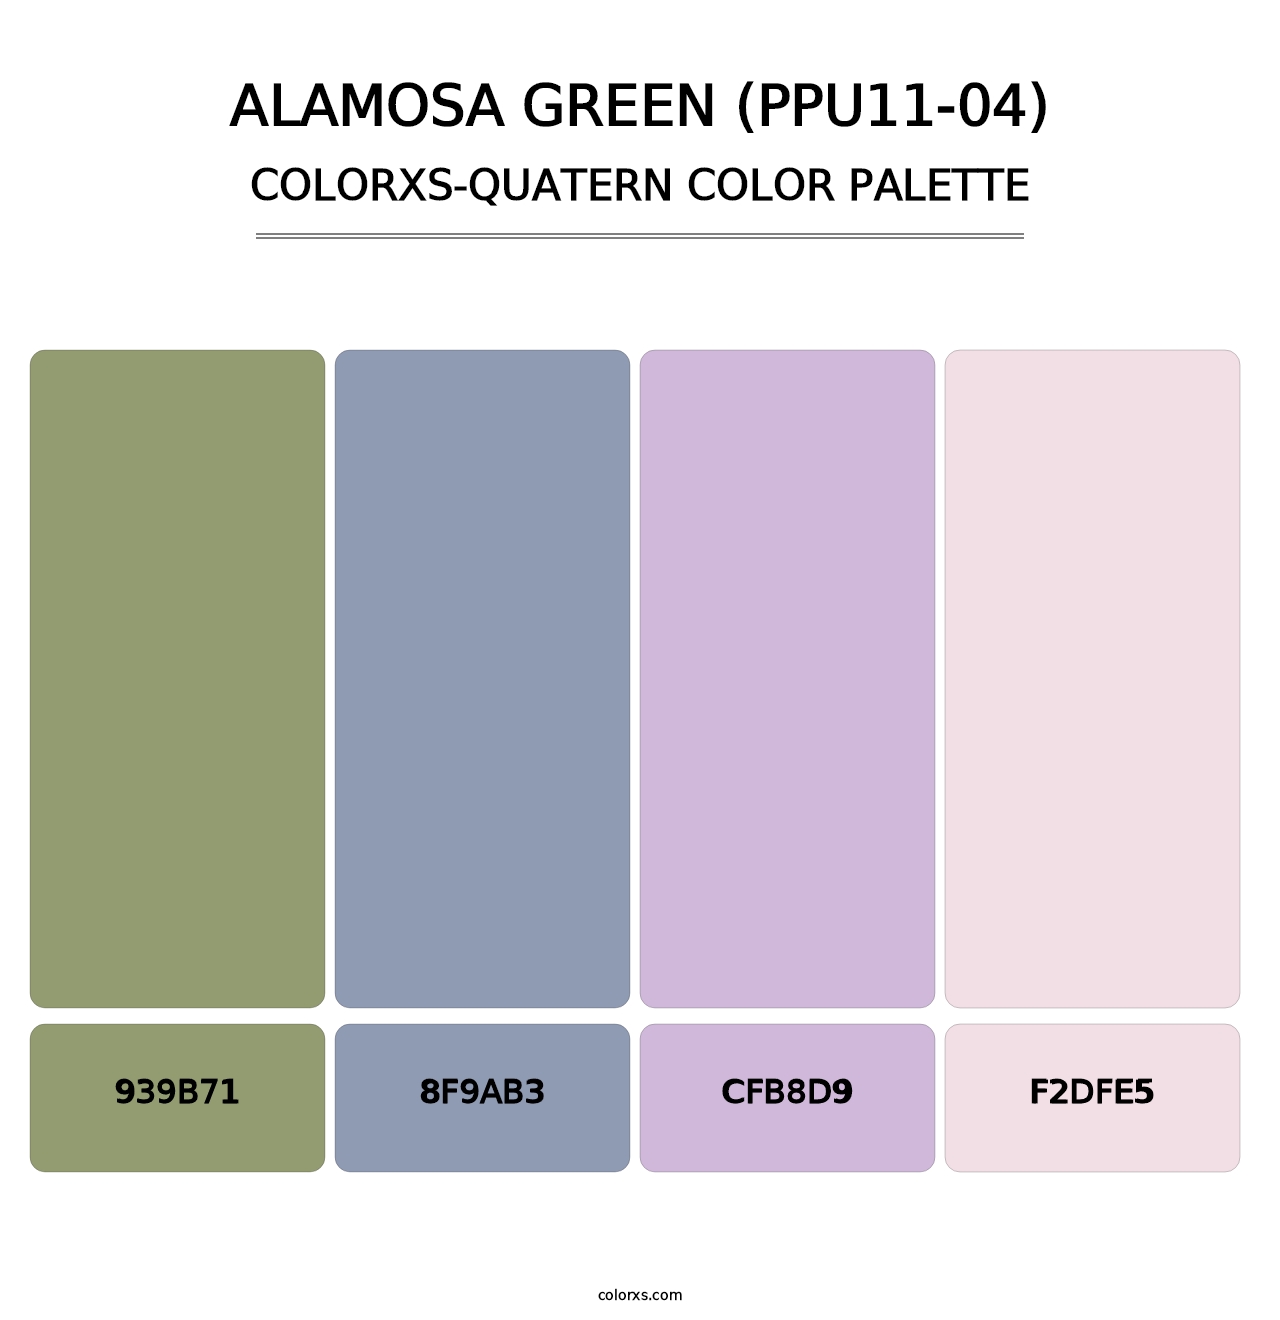 Alamosa Green (PPU11-04) - Colorxs Quatern Palette